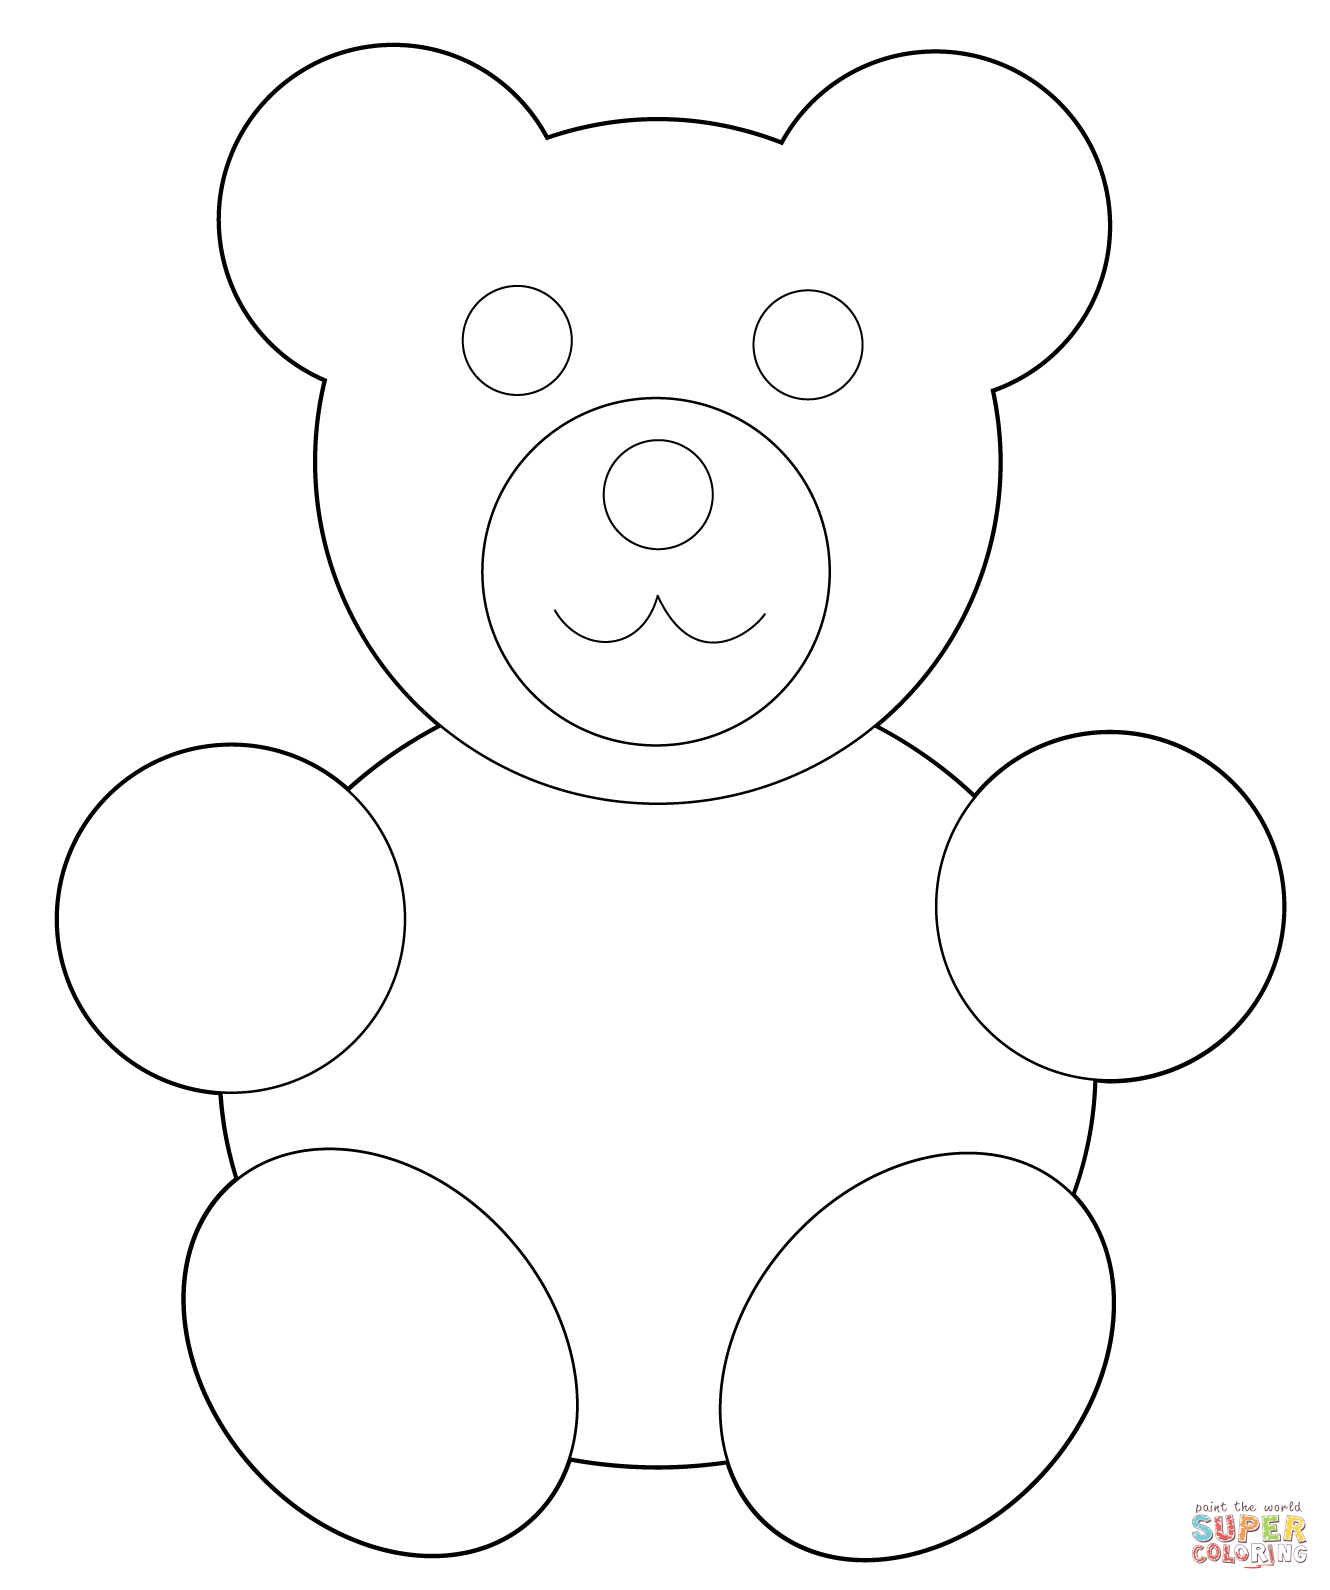 How To Make A Simple Teddy Bear